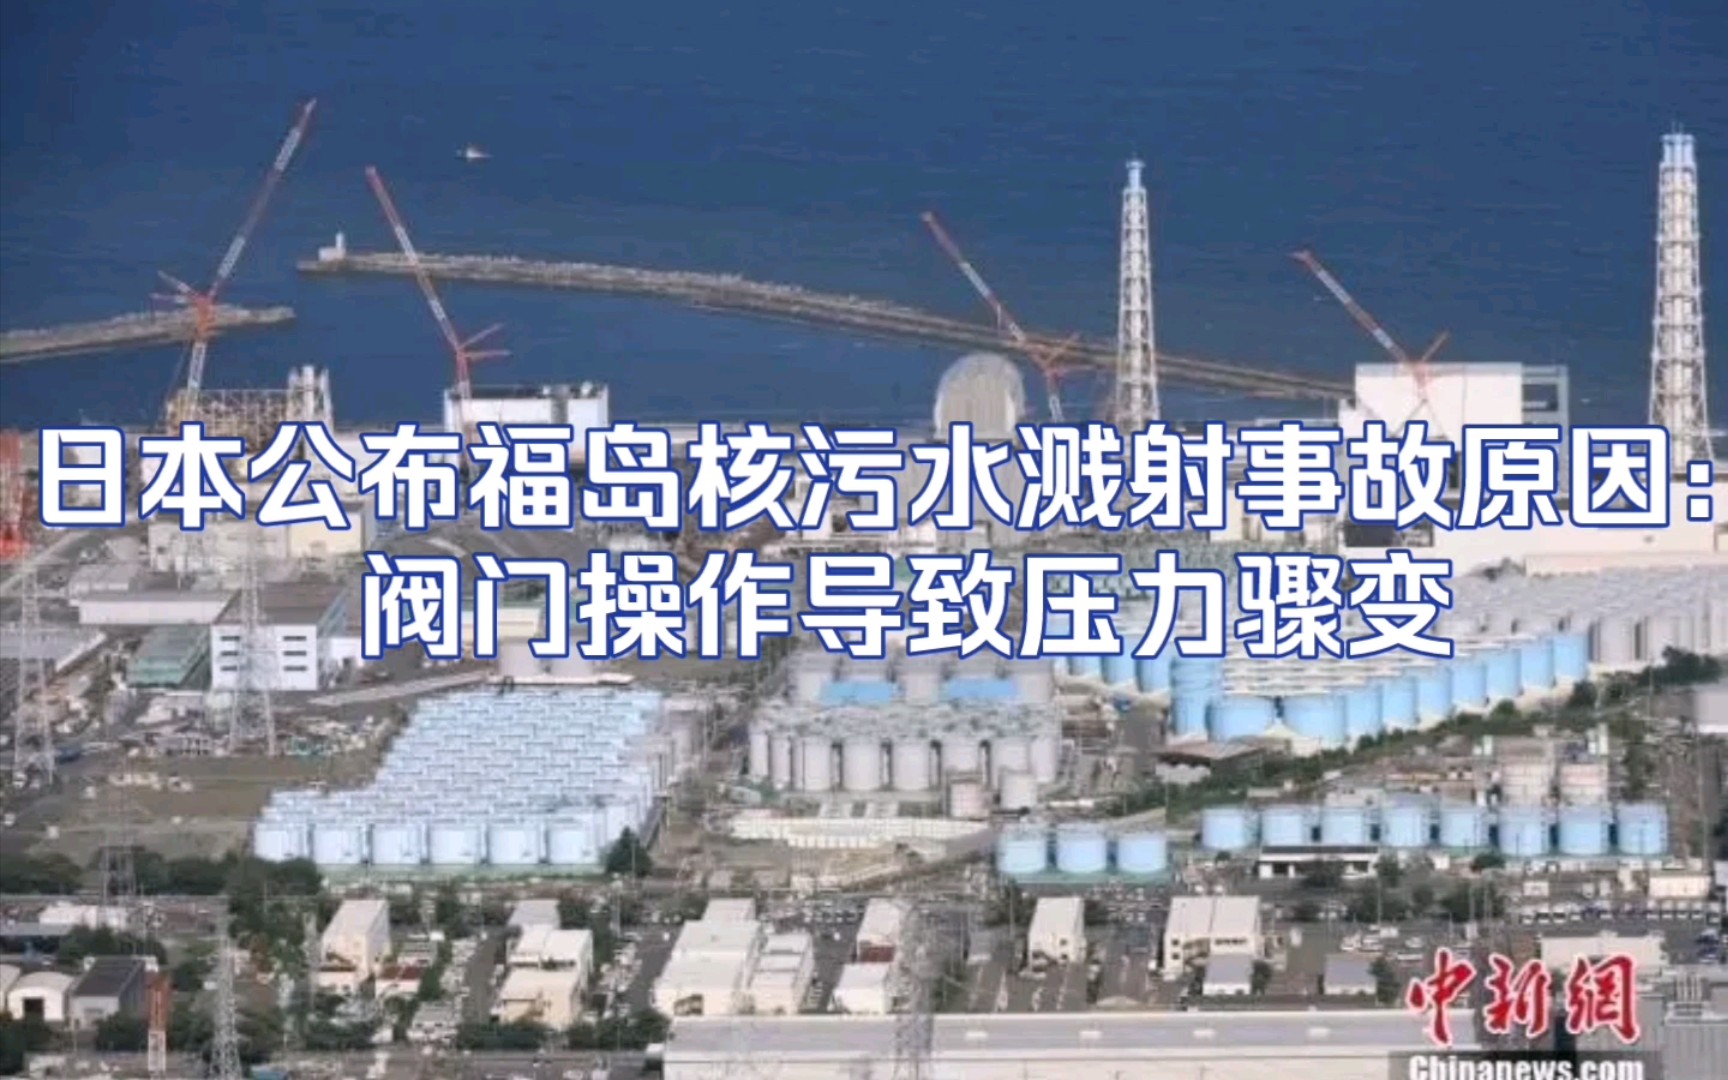 日本公布福岛核污水溅射事故原因:阀门操作导致压力骤变